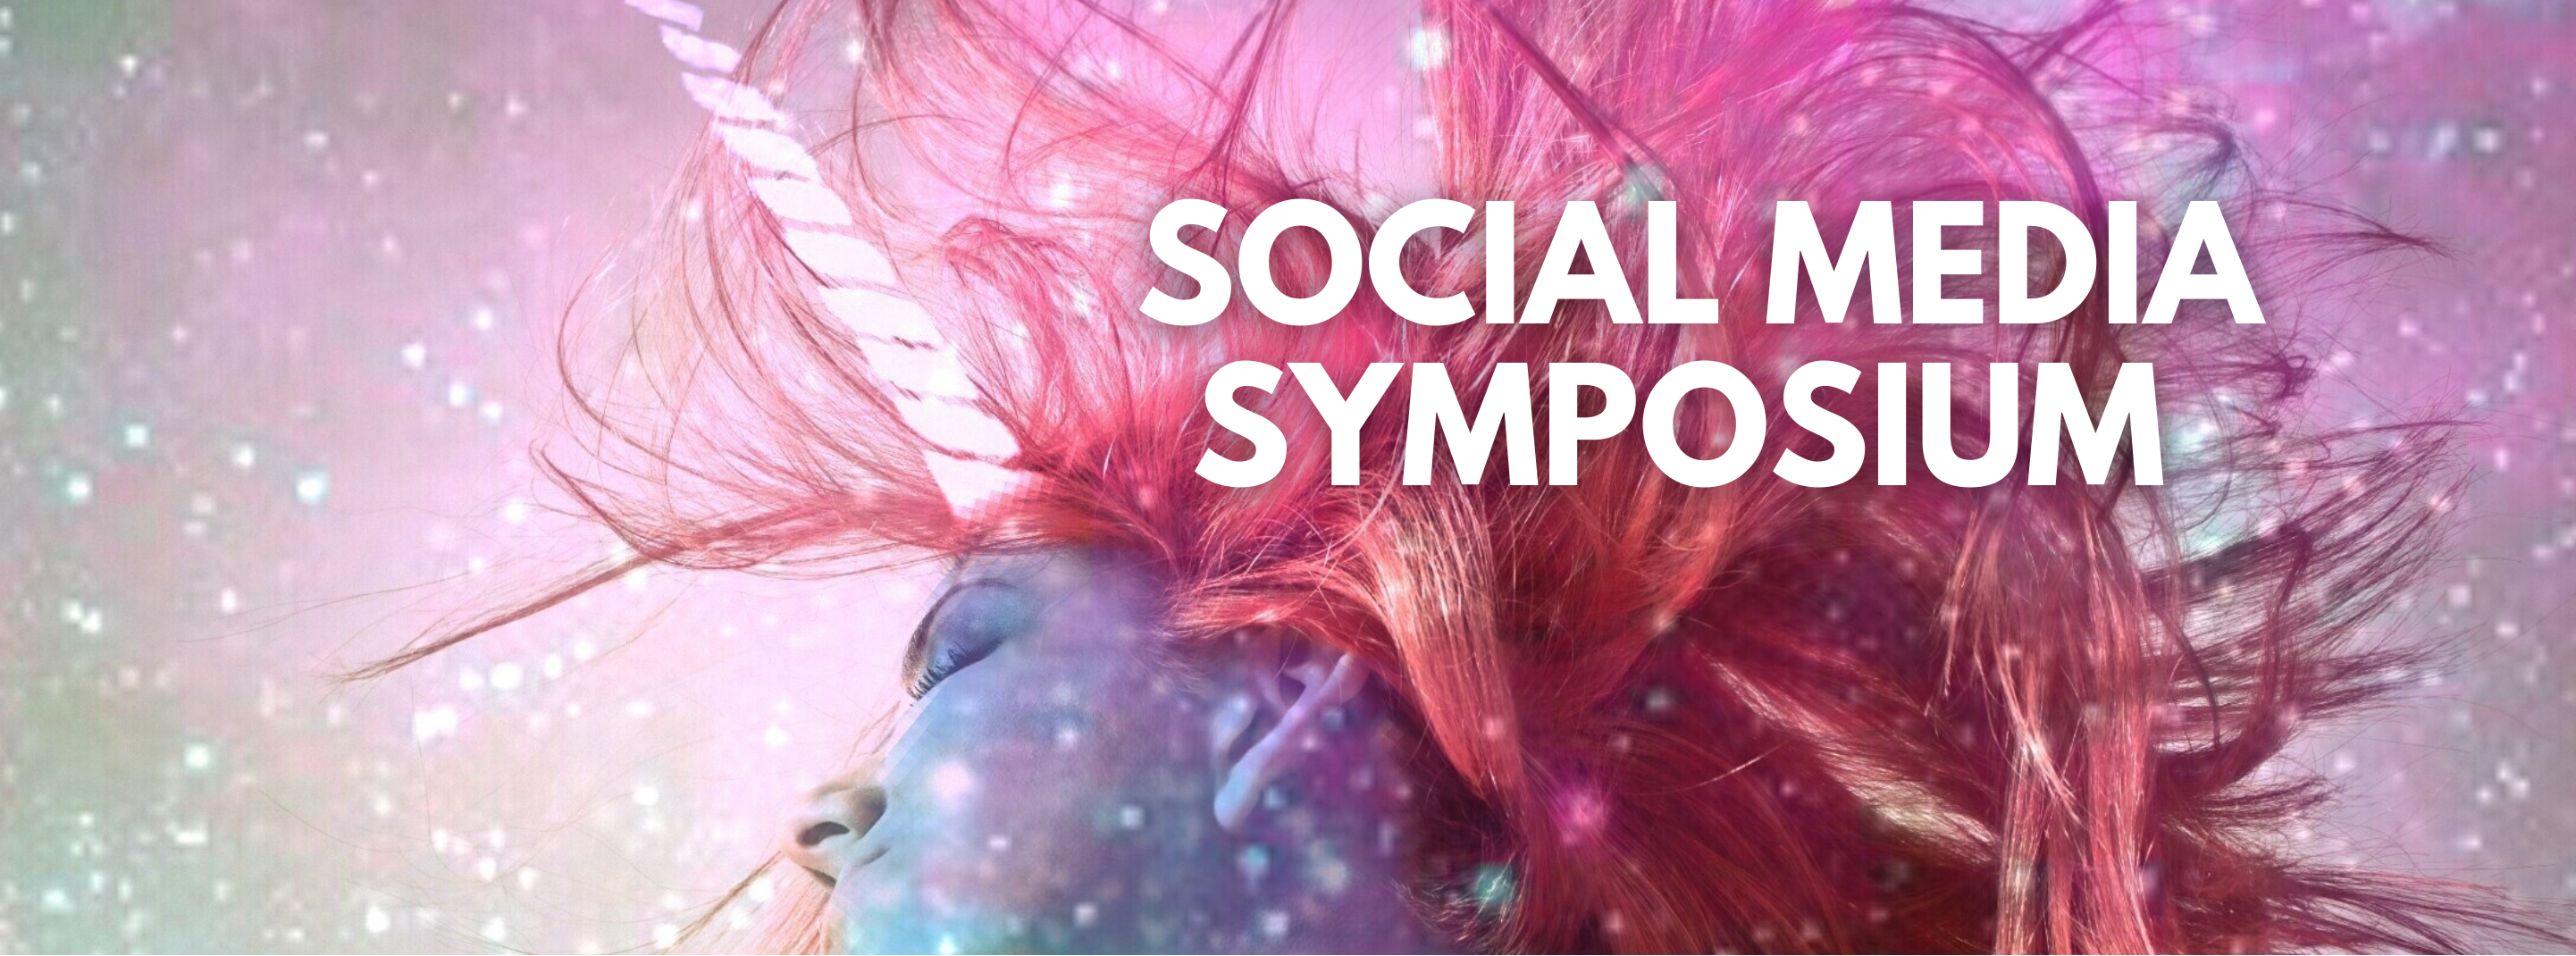 Social Media Symposium header